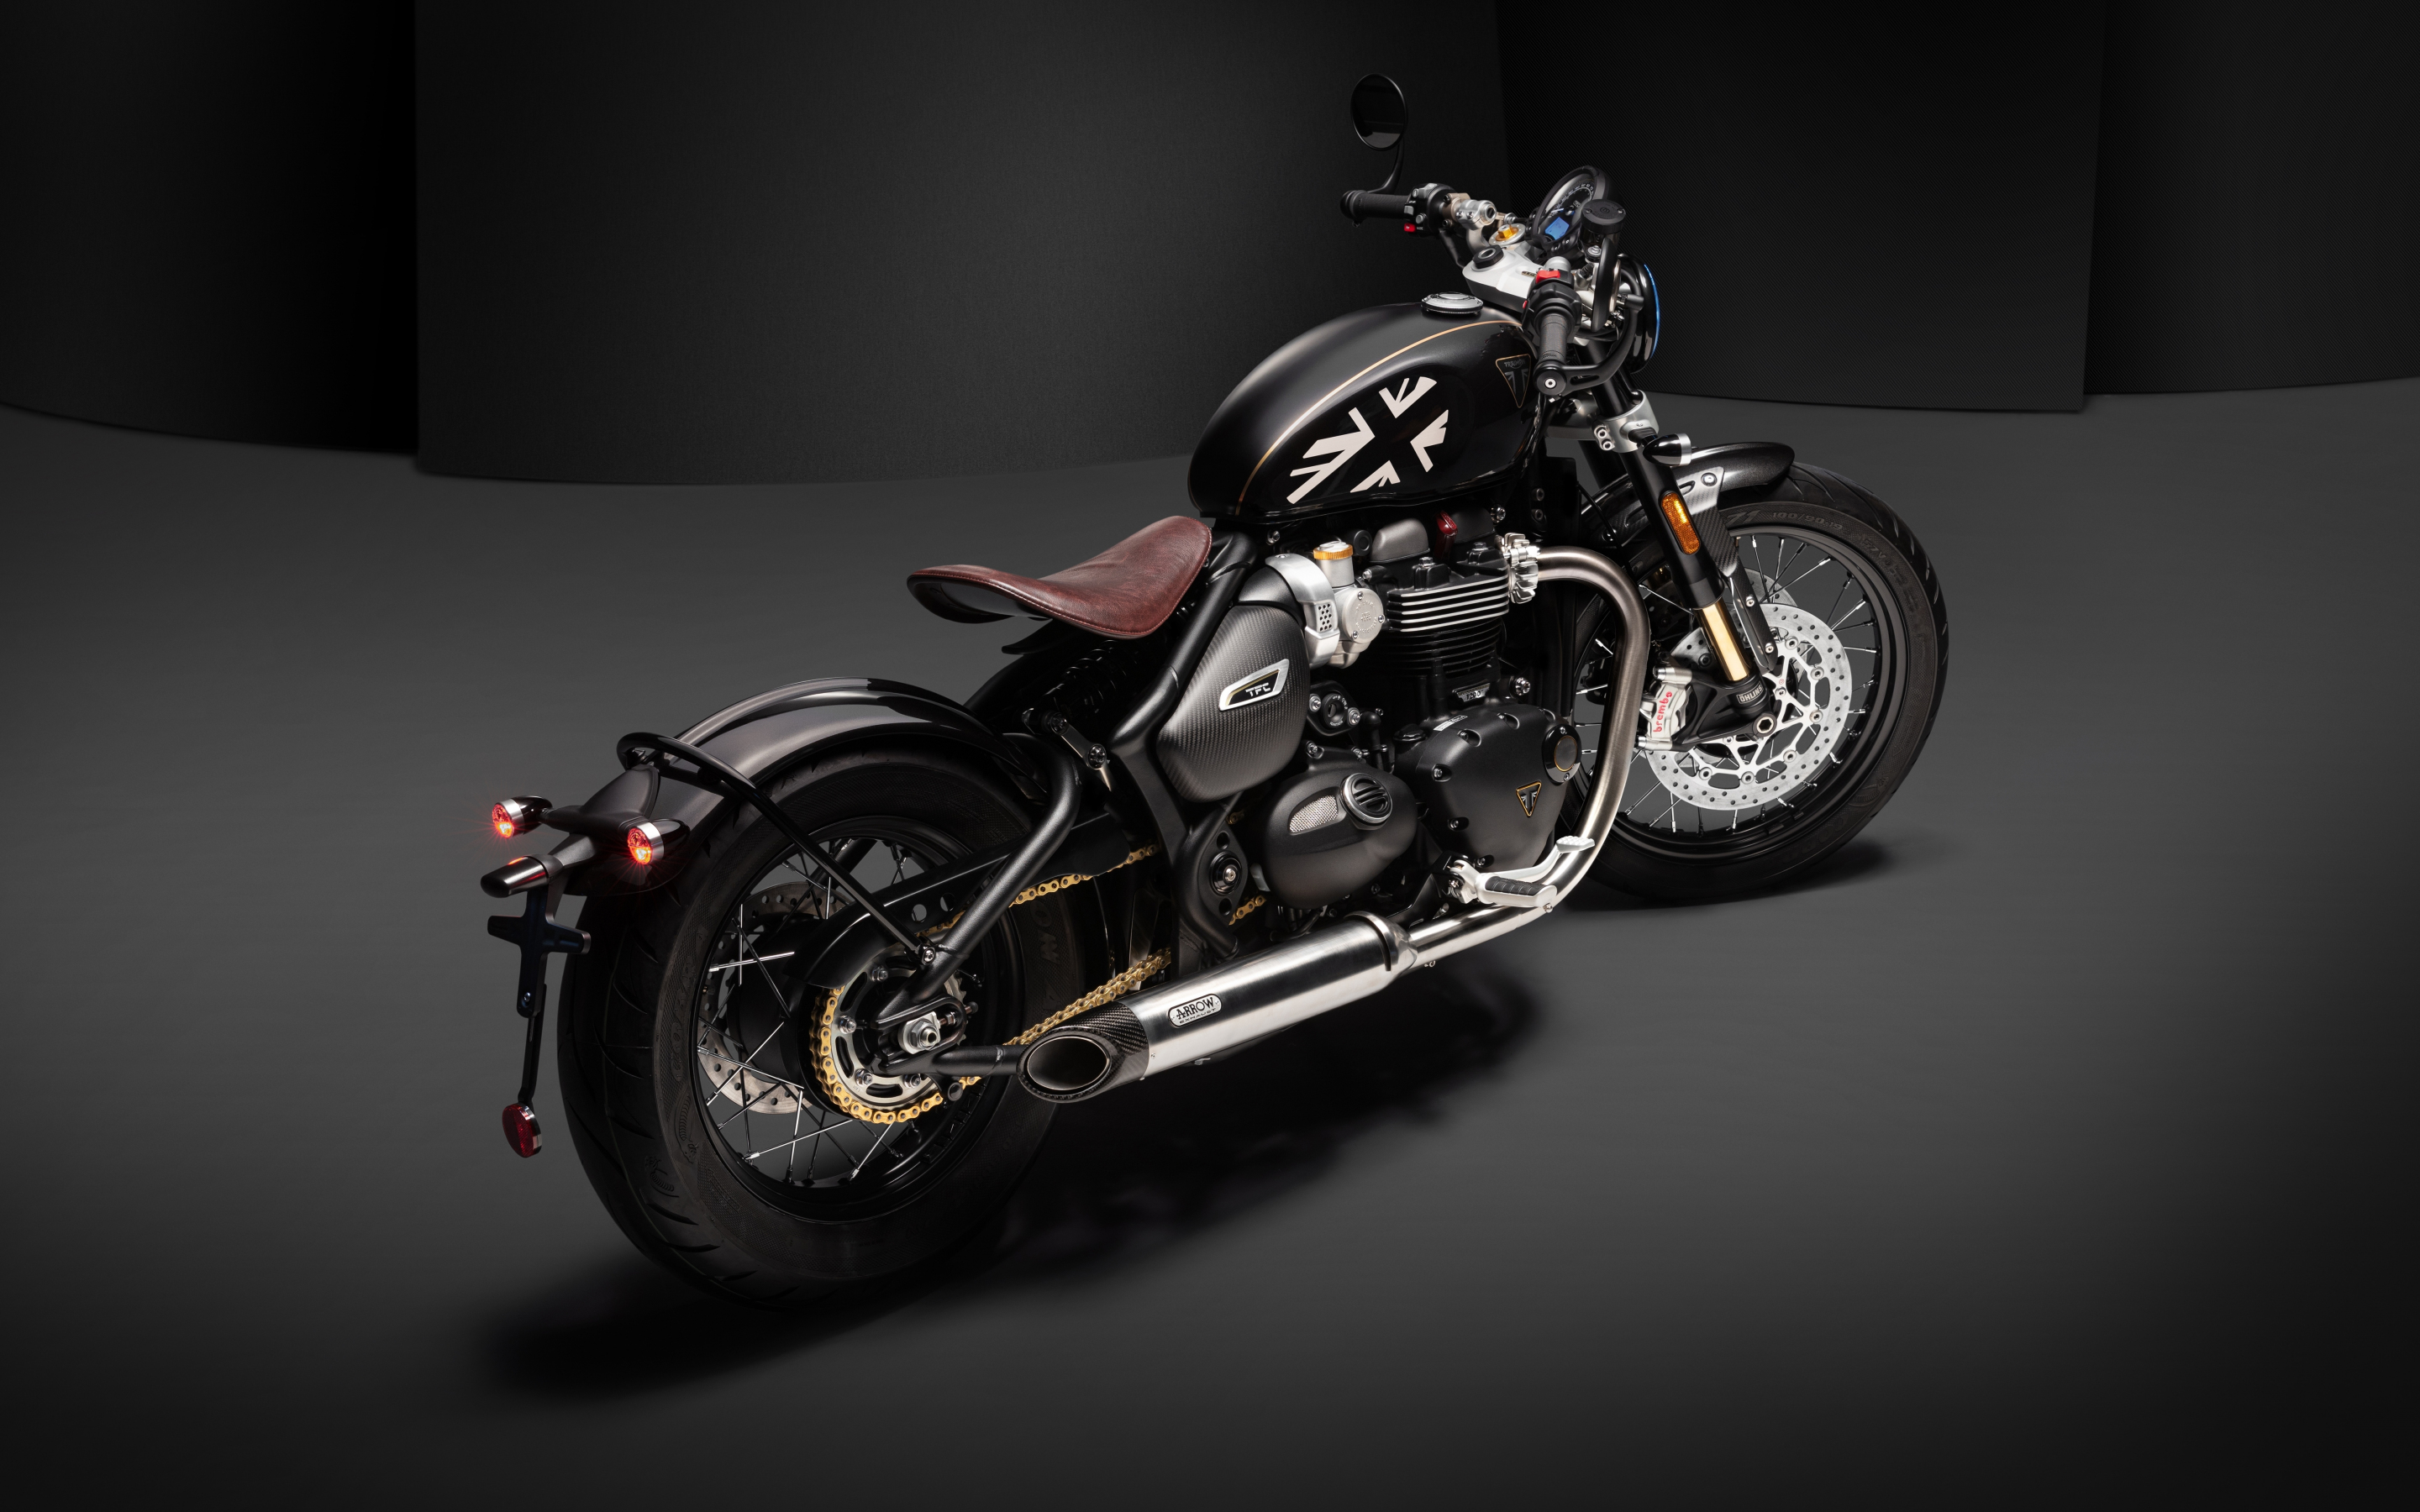 Triumph Bonneville Bobber TFC, 2020 motorcycle, 2880x1800 wallpaper